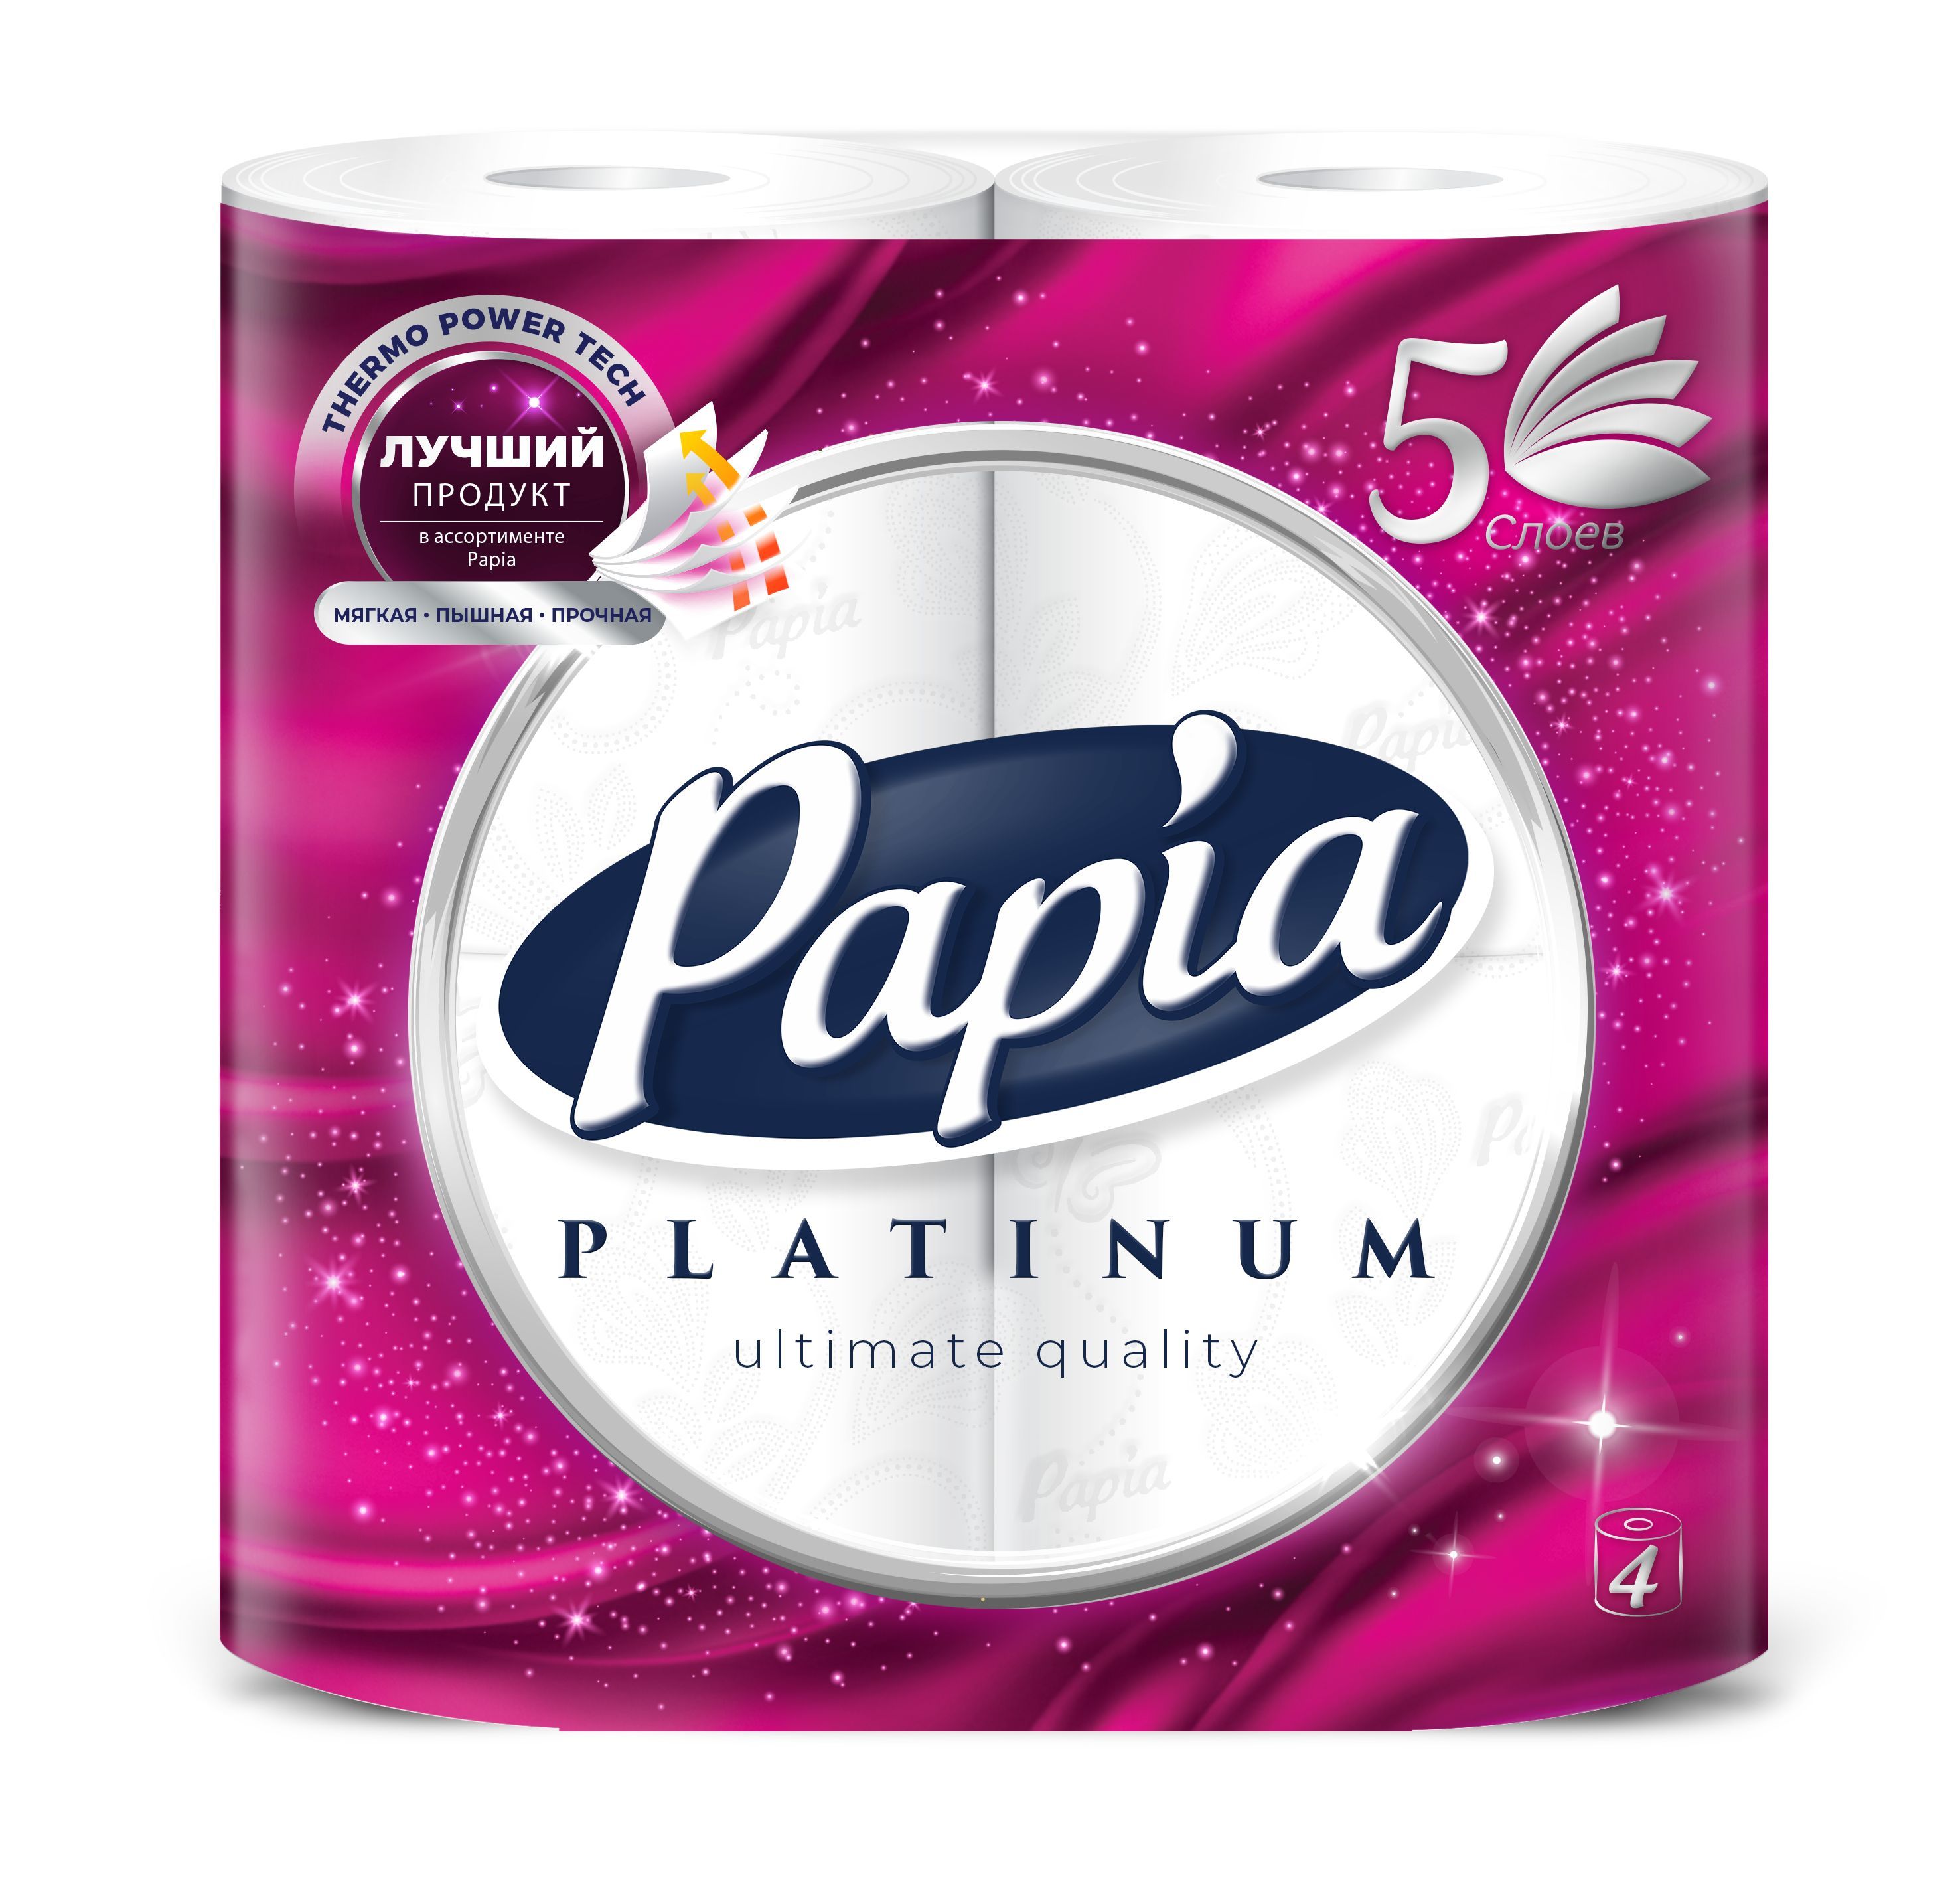 Бумага papia купить. Туалетная бумага пятислойная Papia 4 рулона. Папия 5 слоев туалетная бумага. Прокладки папиа. Papia Platinum 5 слоев 8 рулонов 1шт.